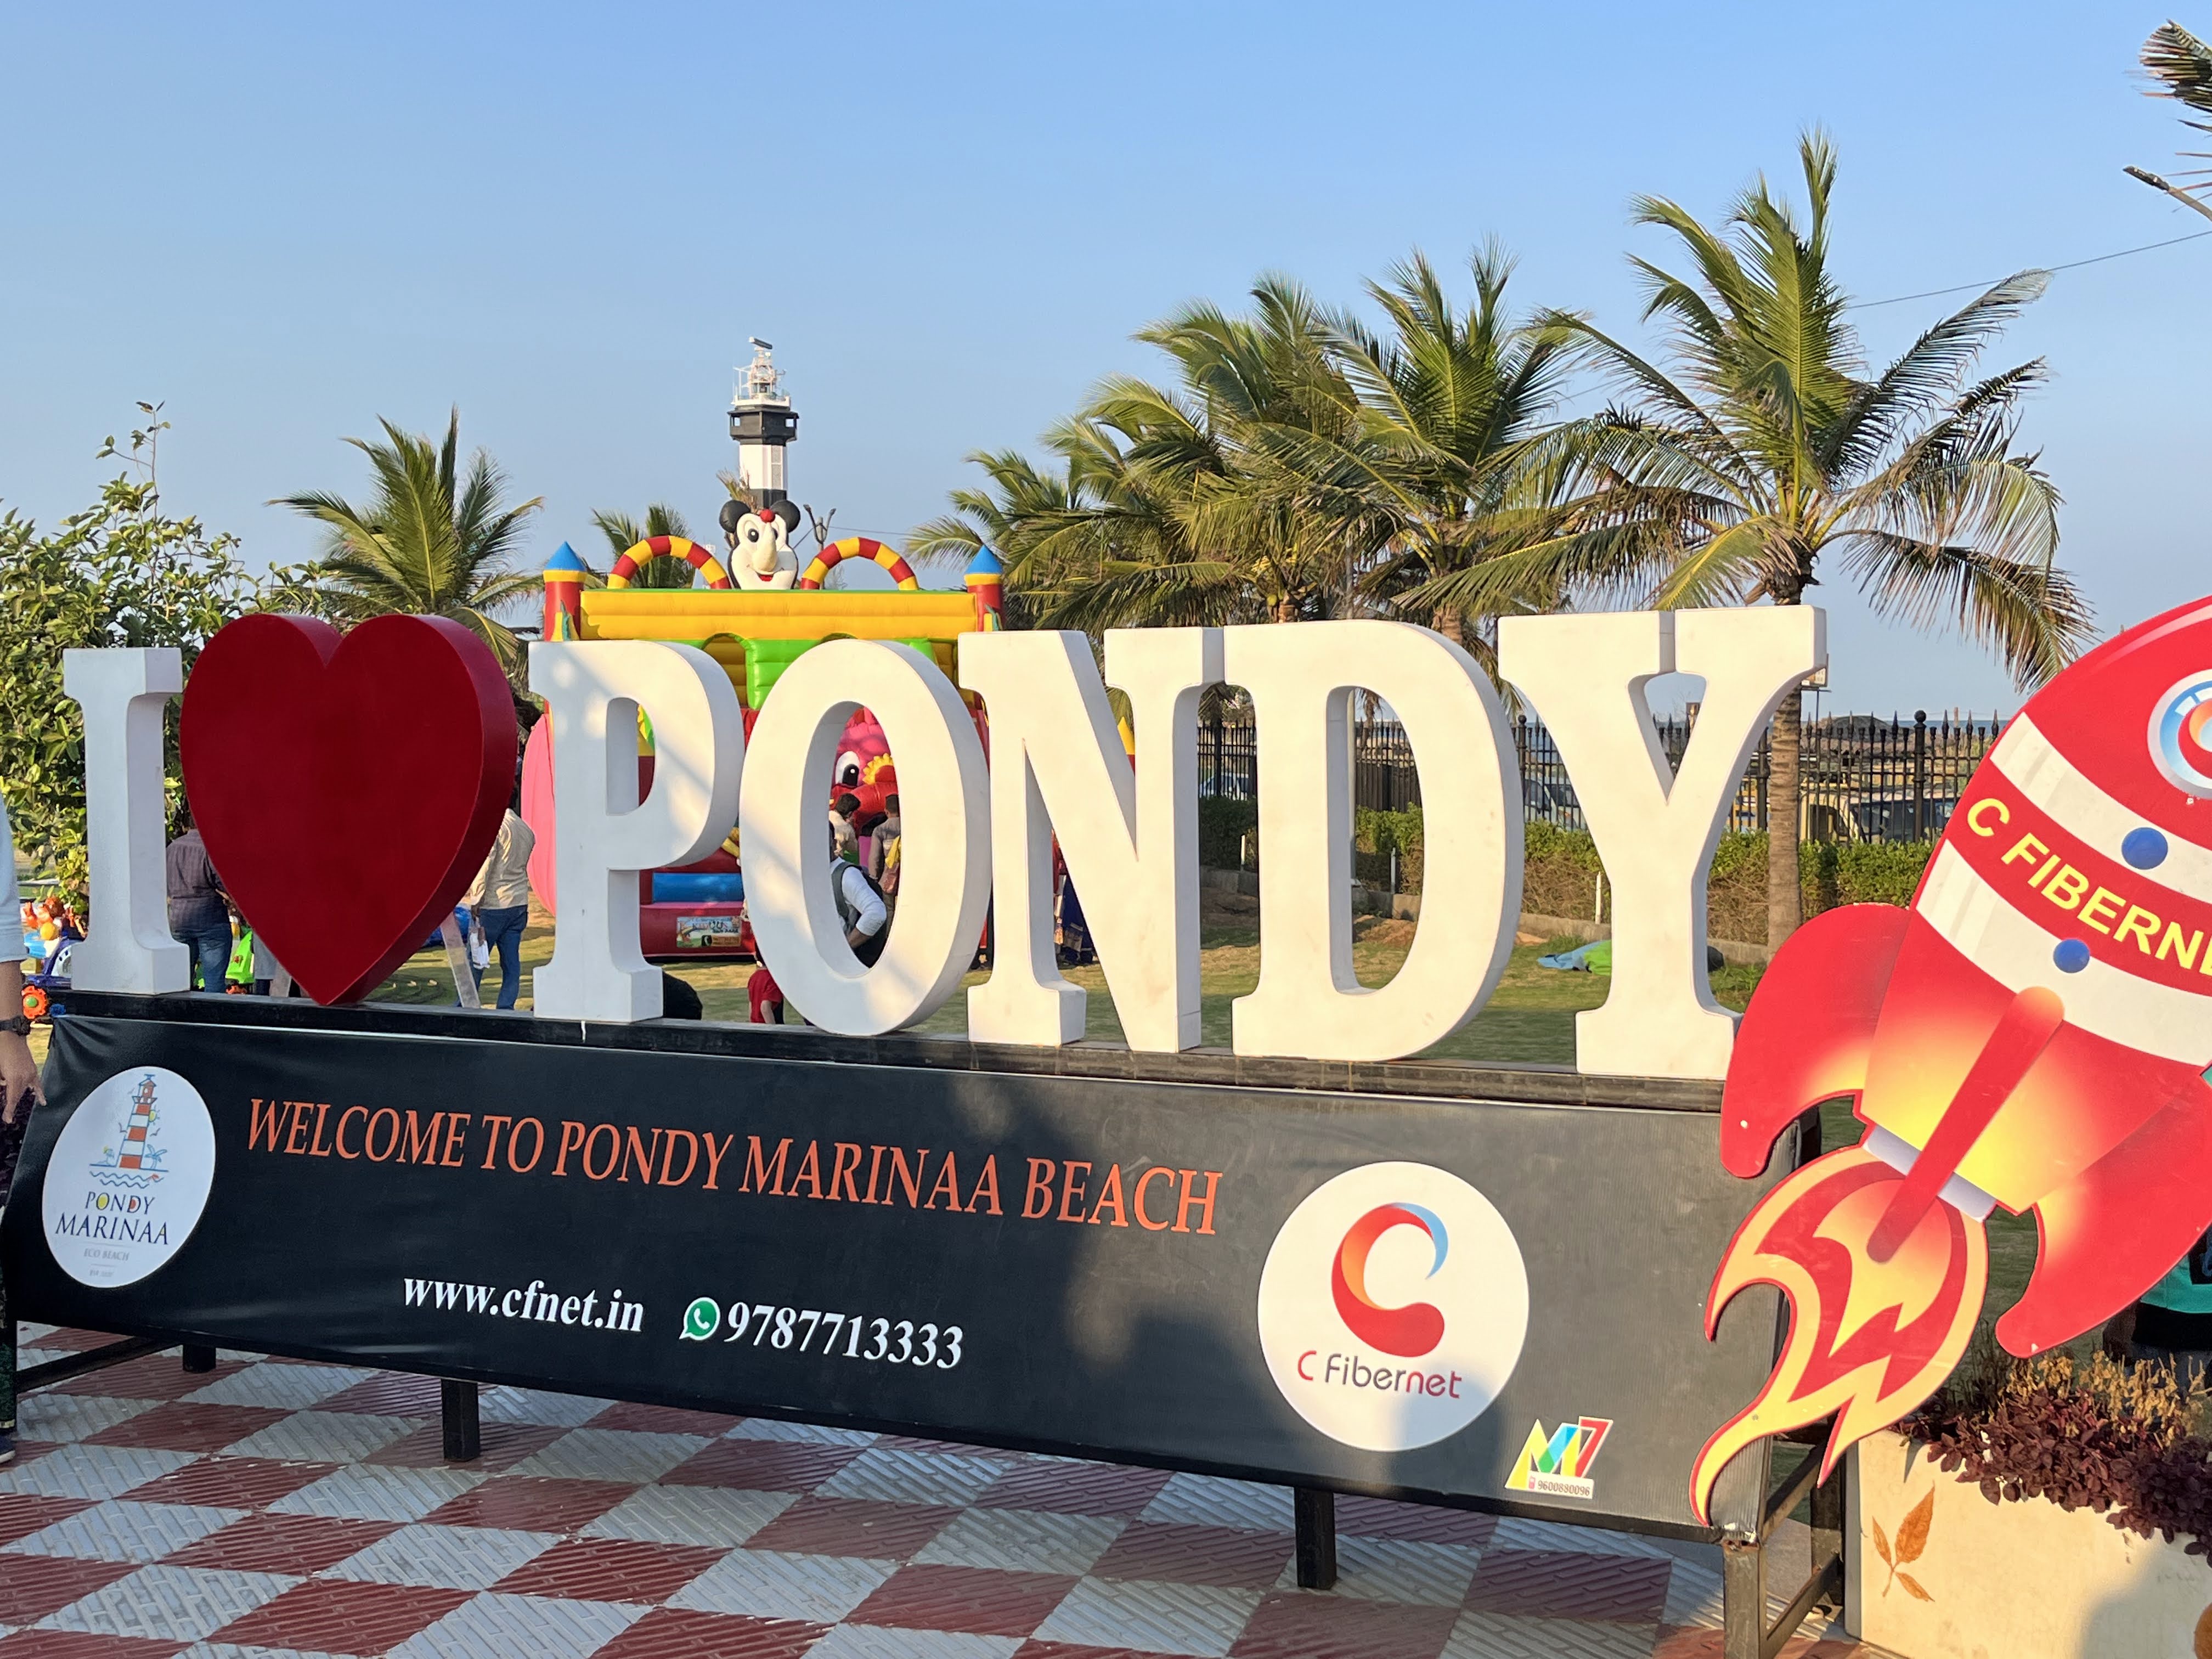 Pondy Marinaa Beach Pondicherry